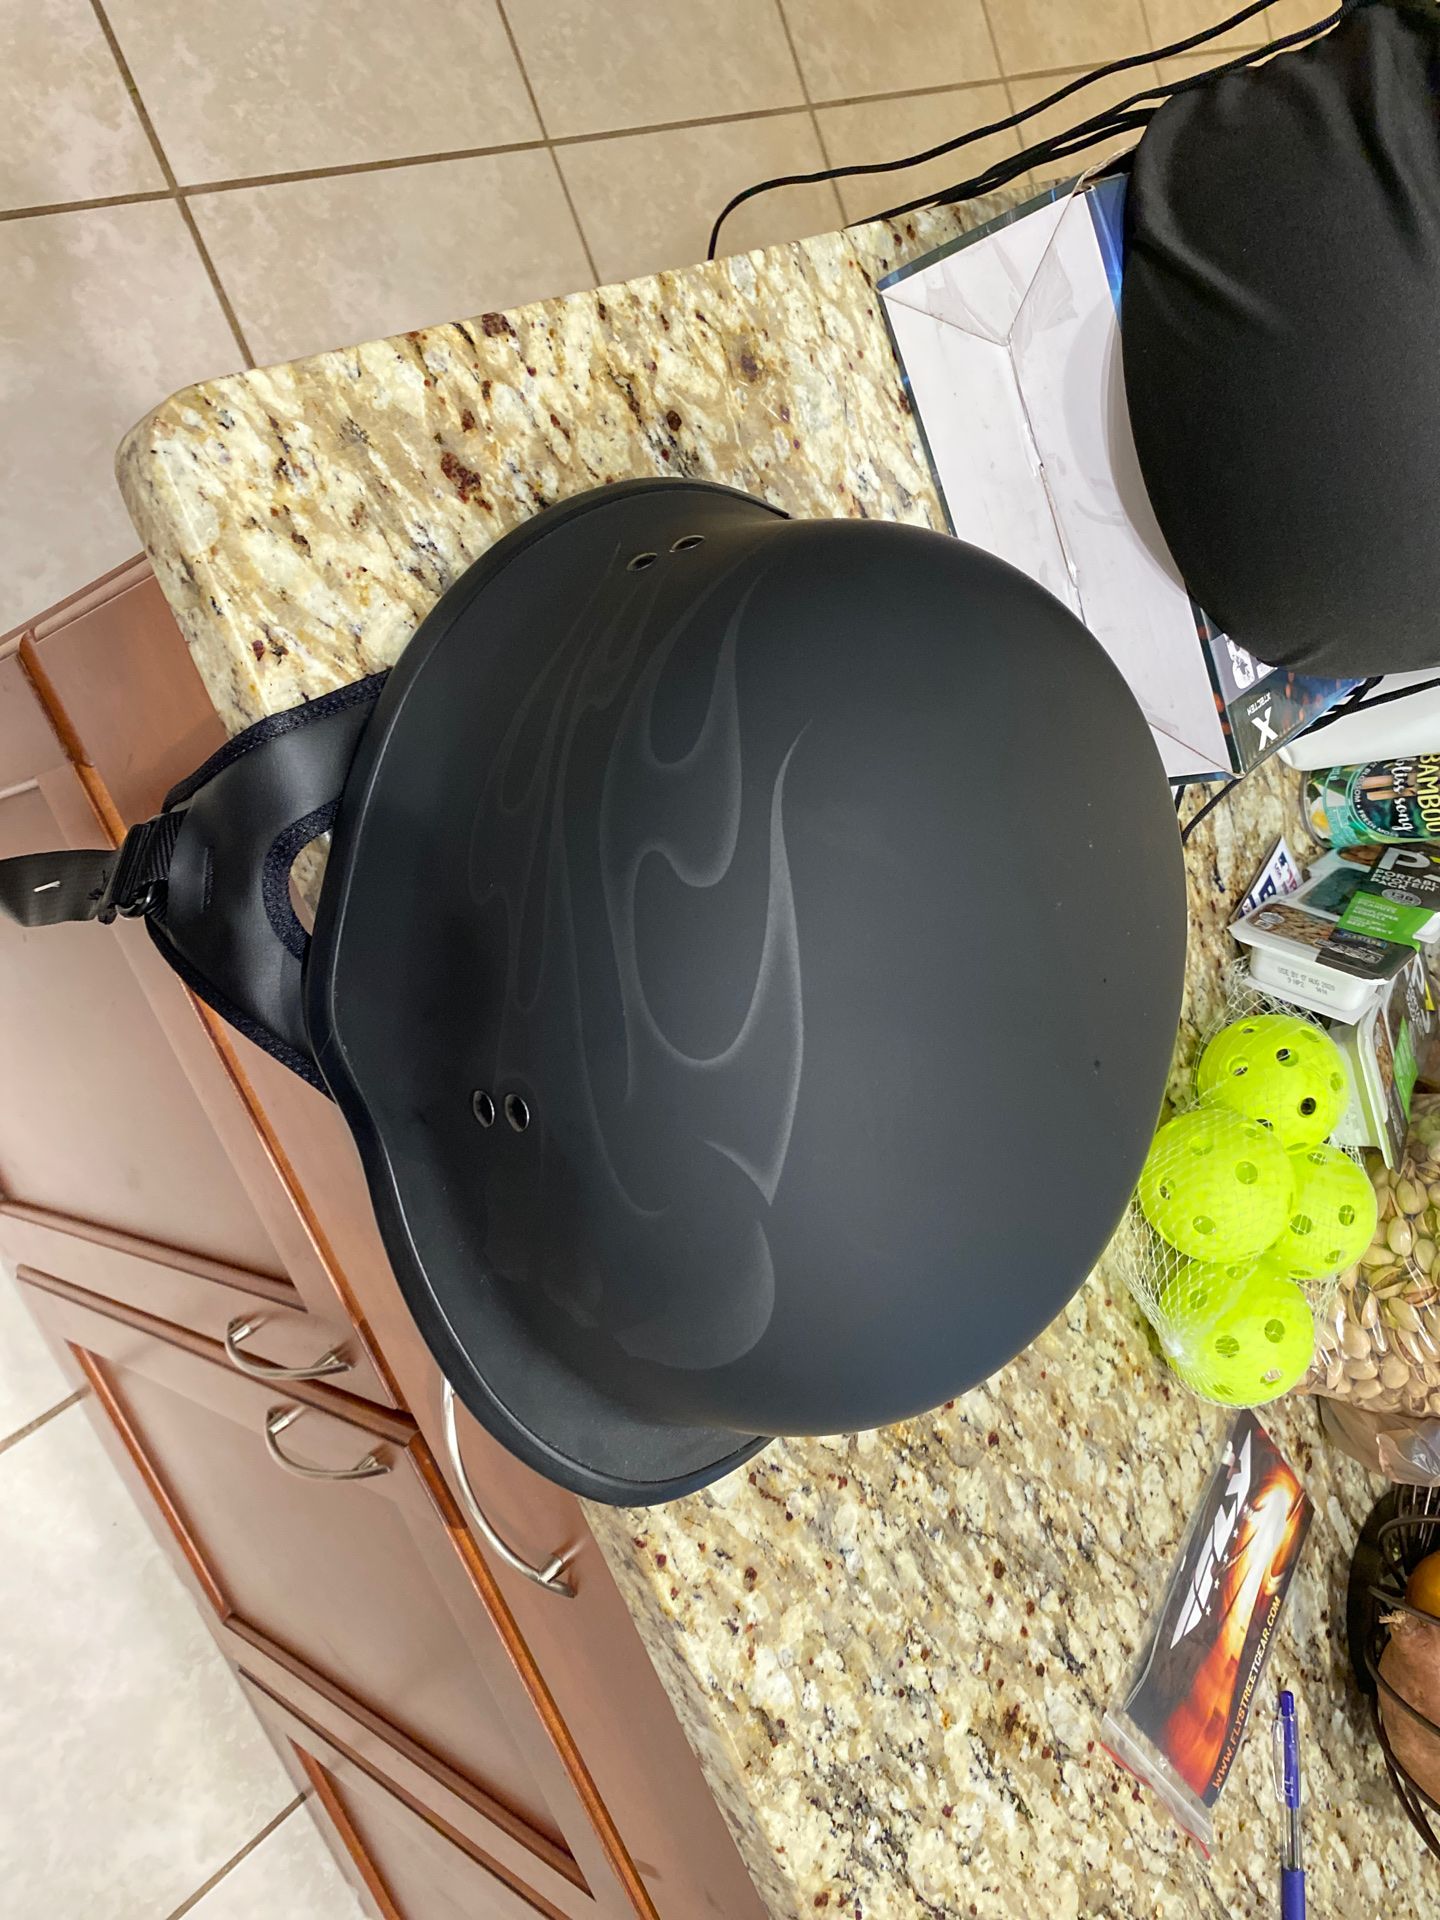 Fly motorcycle helmet